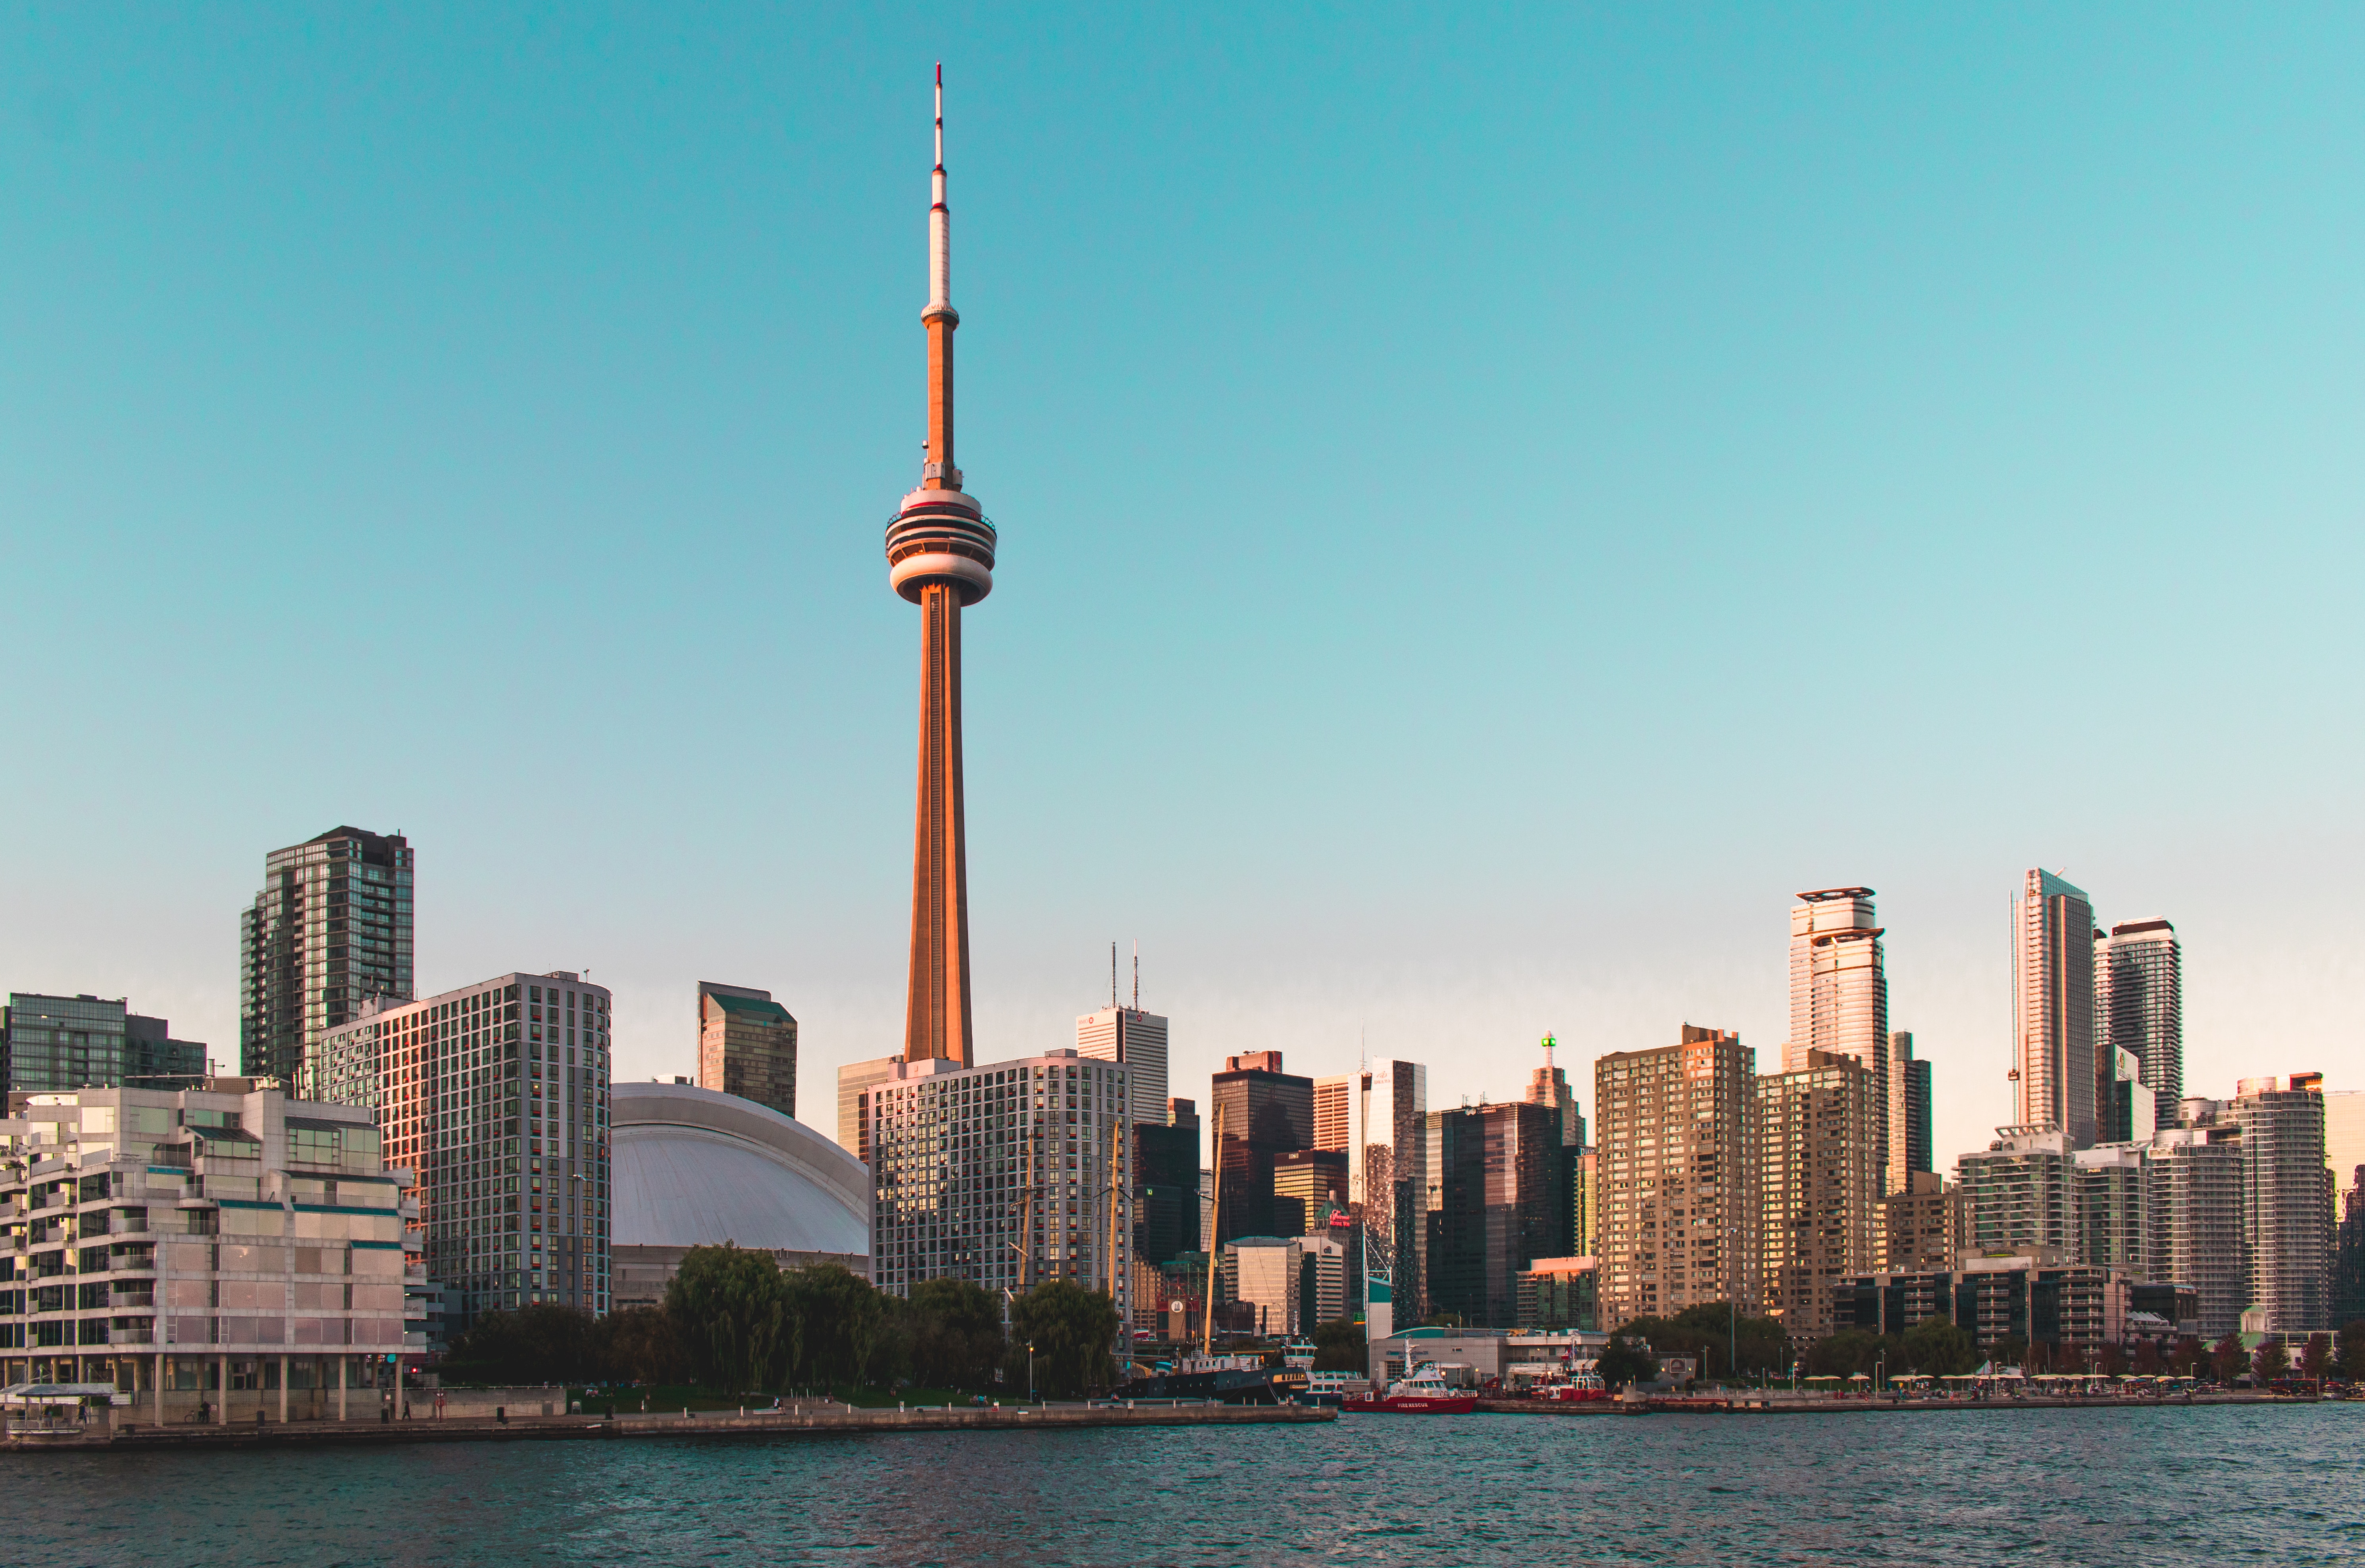 Vista del downtown de la ciudad de Toronto, ON. Canadá. (Cortesía de Pexels)